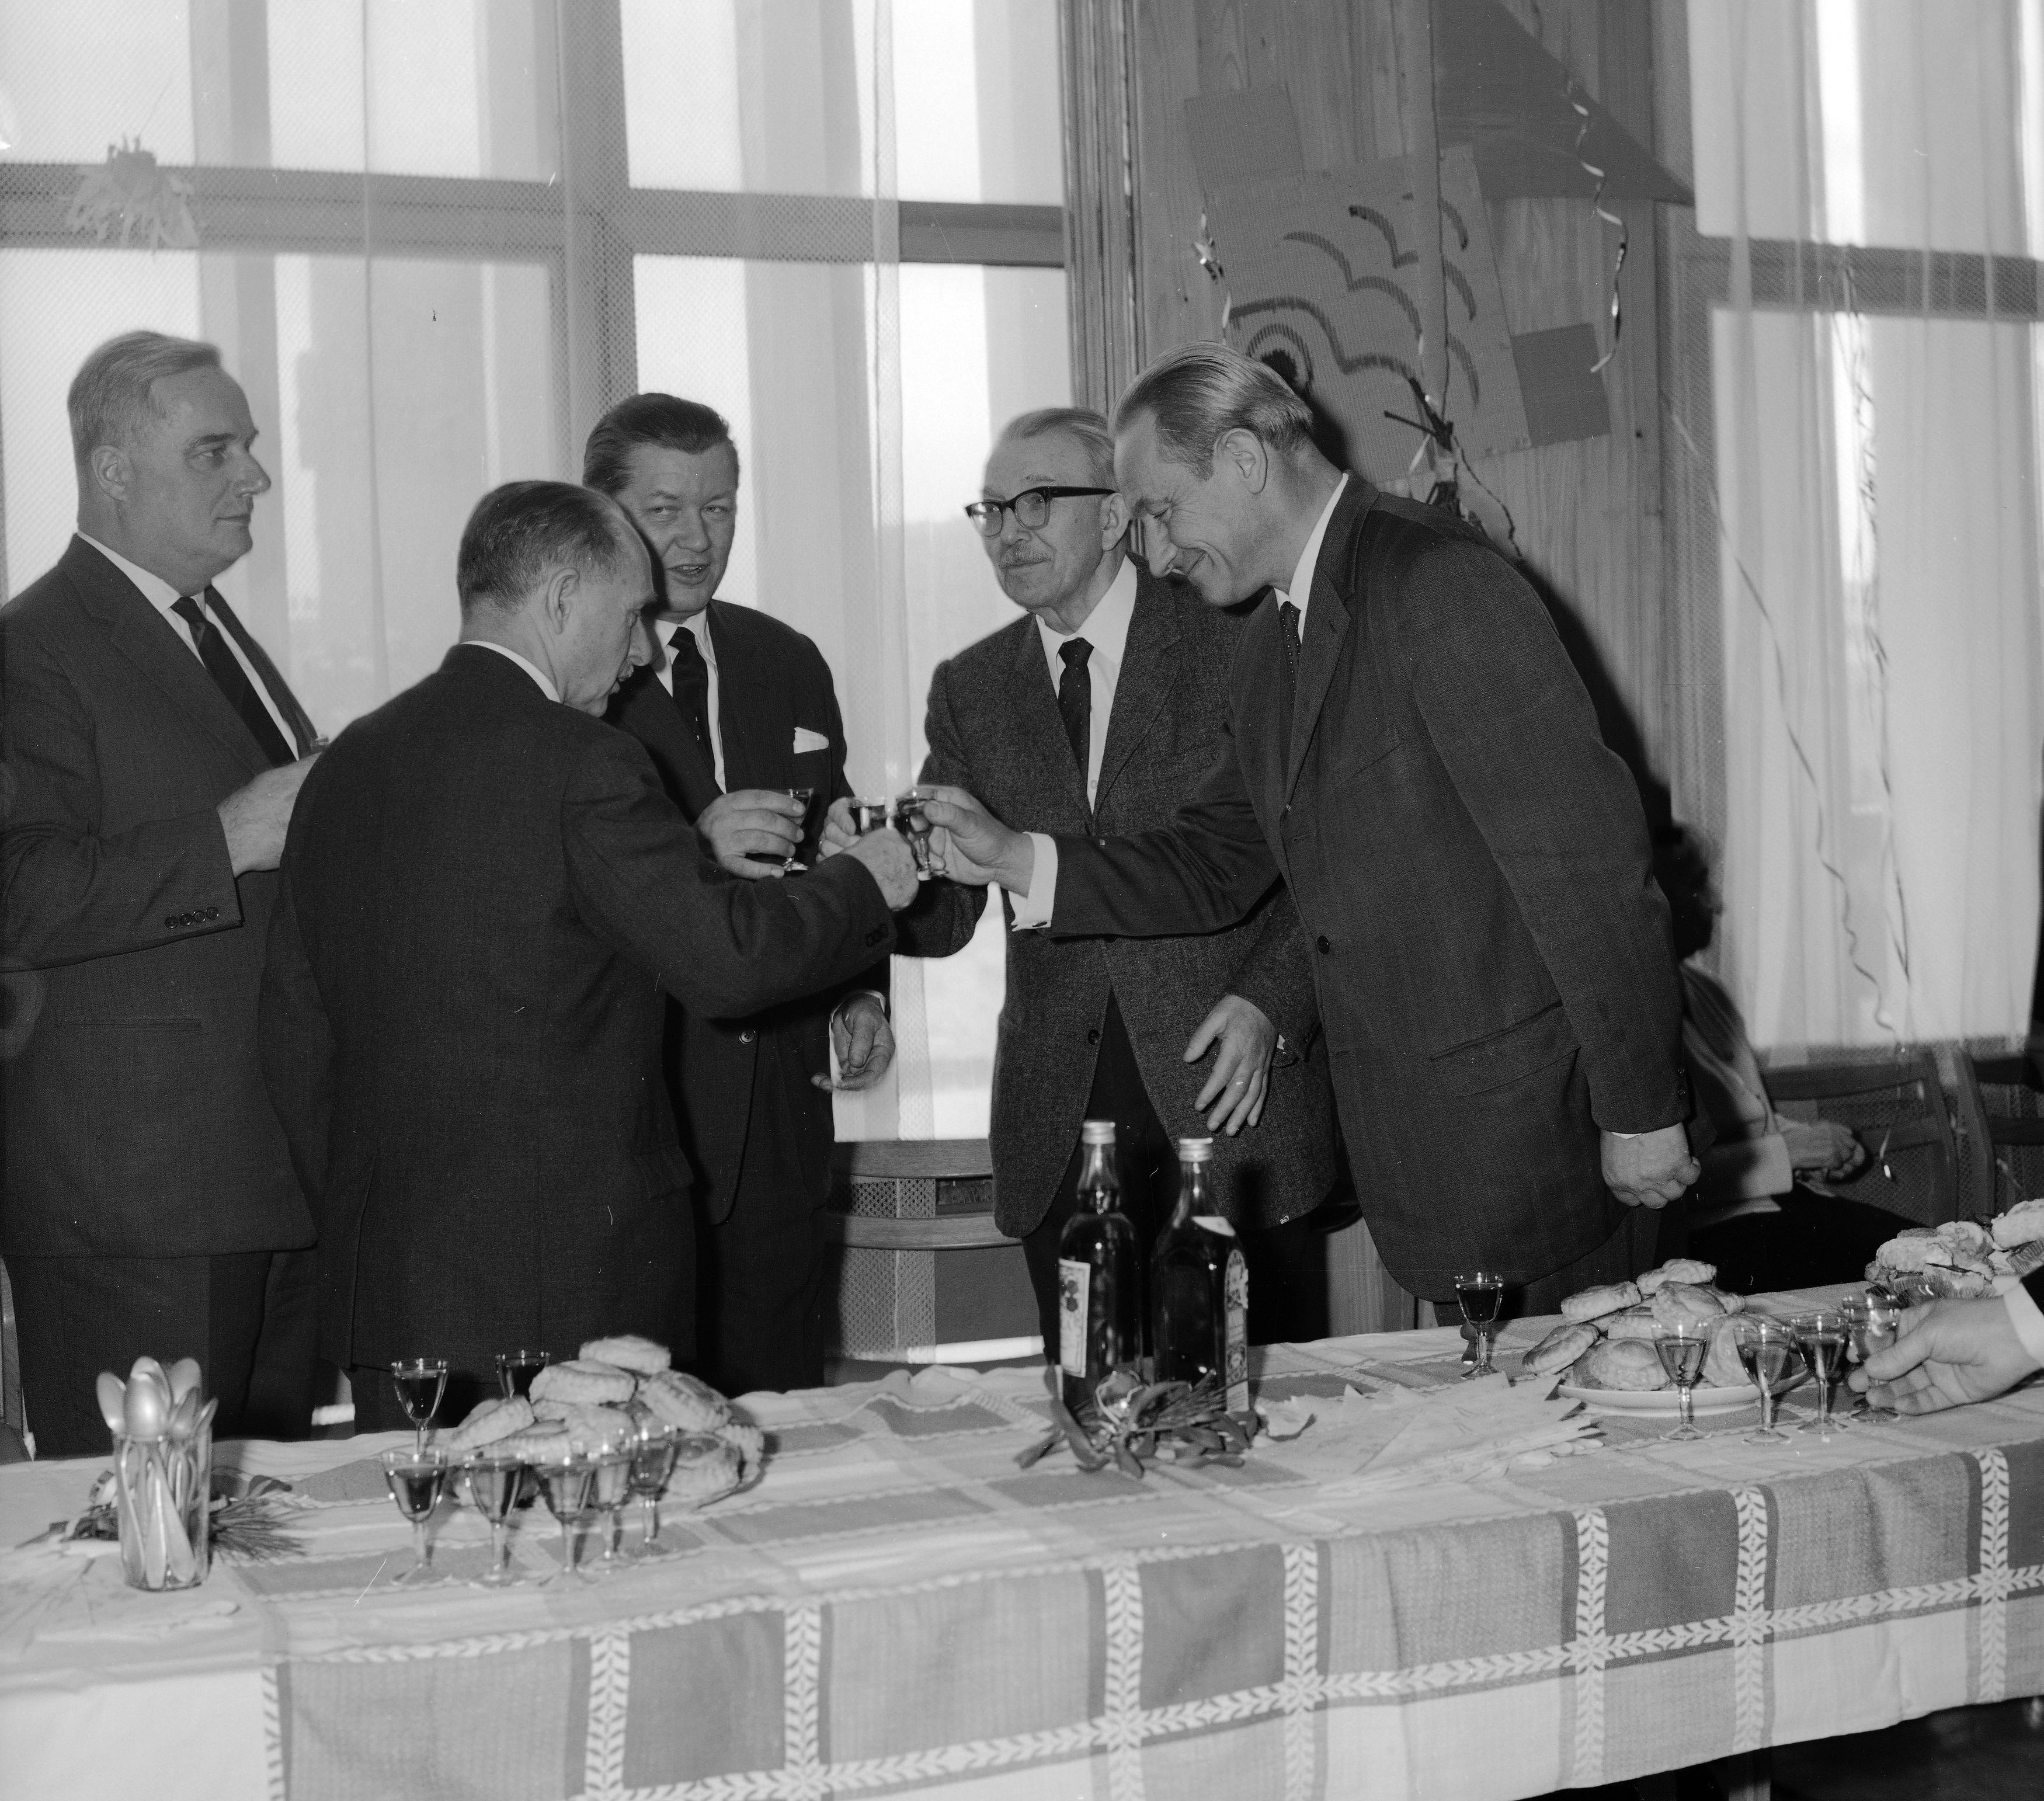  Od lewej: dyrektor Stanisław Balicki, marszałek Czesław Wycech, minister Lucjan Motyka, były prezes LSW St. Dybowski, prezes LSW Mieczysław Grad. Warszawa 1969r /NAC